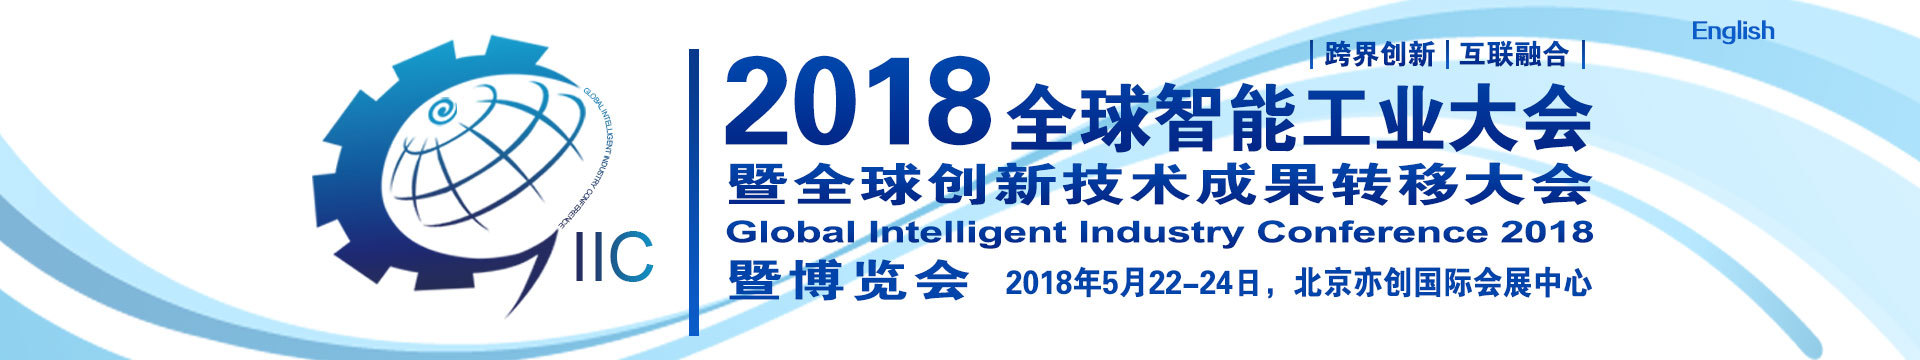 2018全球智能工业大会暨全球创新技术成果转移大会暨博览会